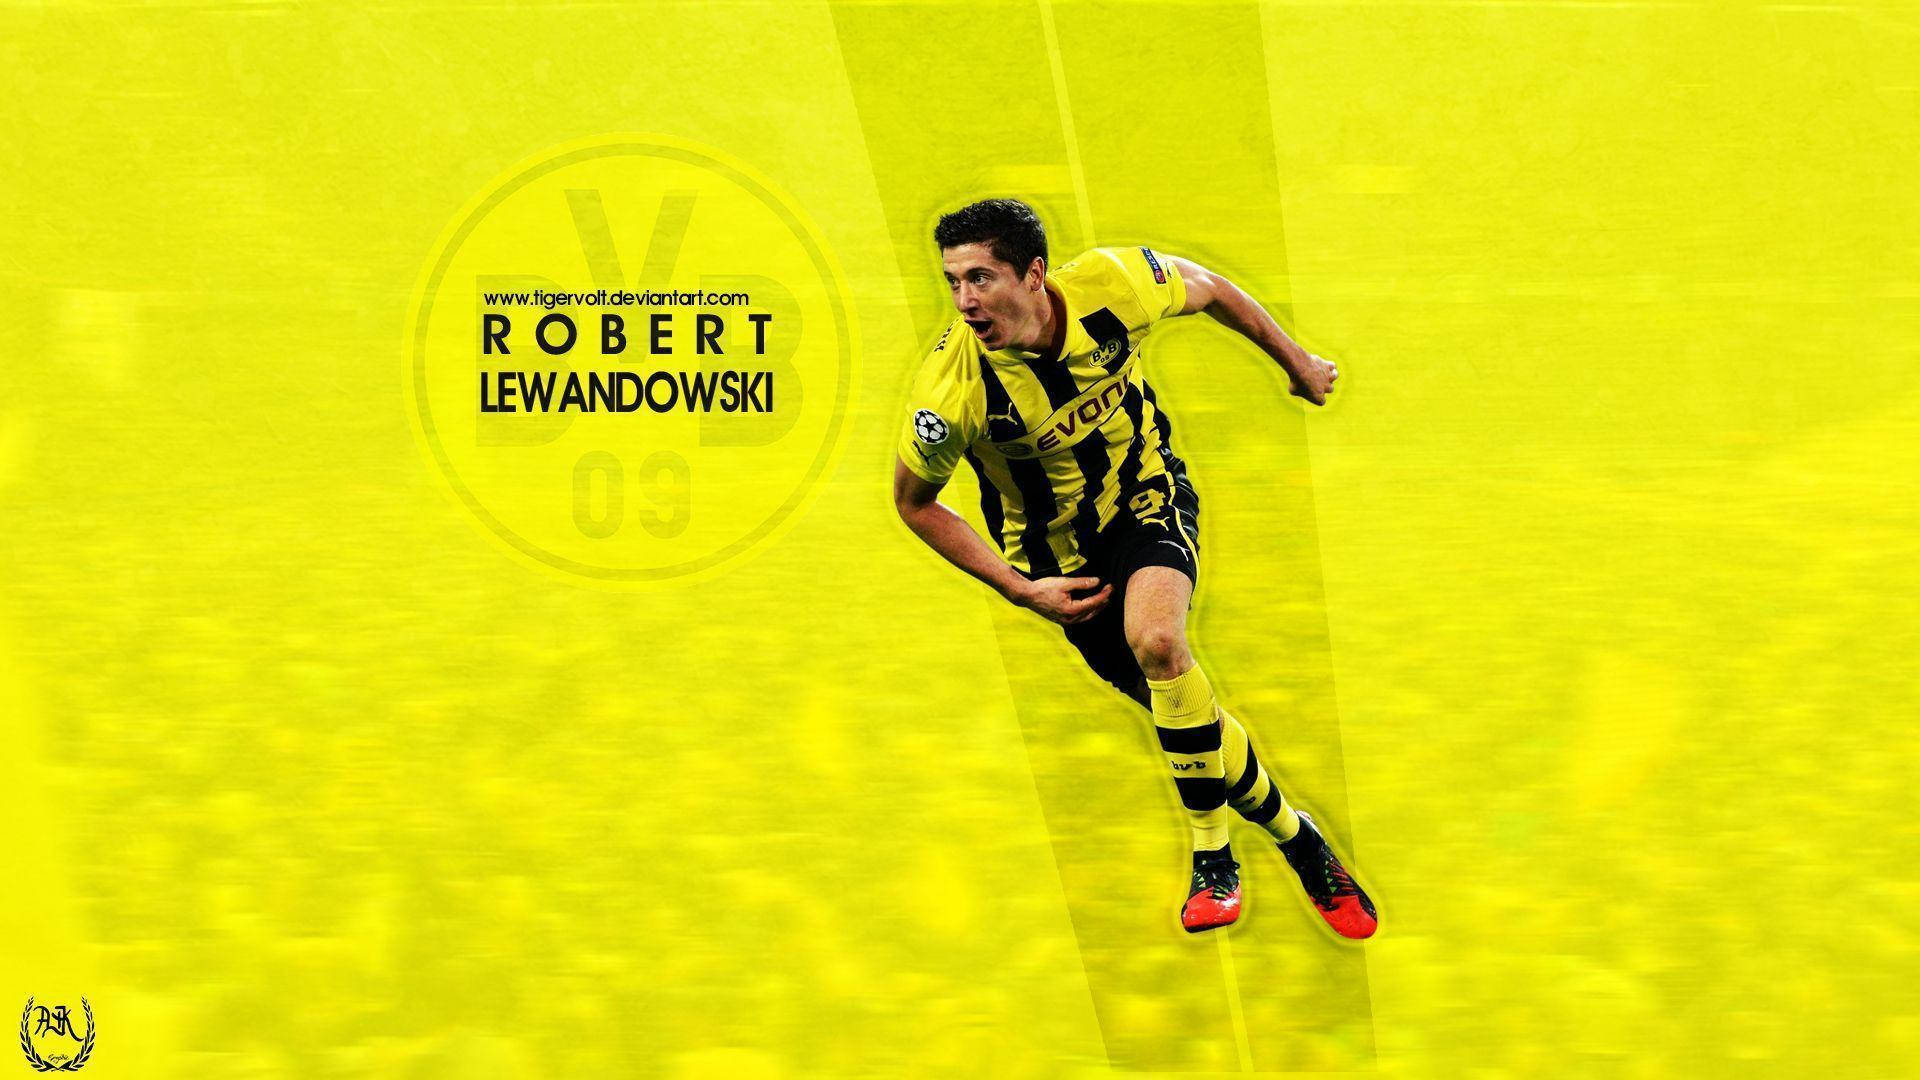 Caption: Robert Lewandowski In Action During A Football Match. Wallpaper